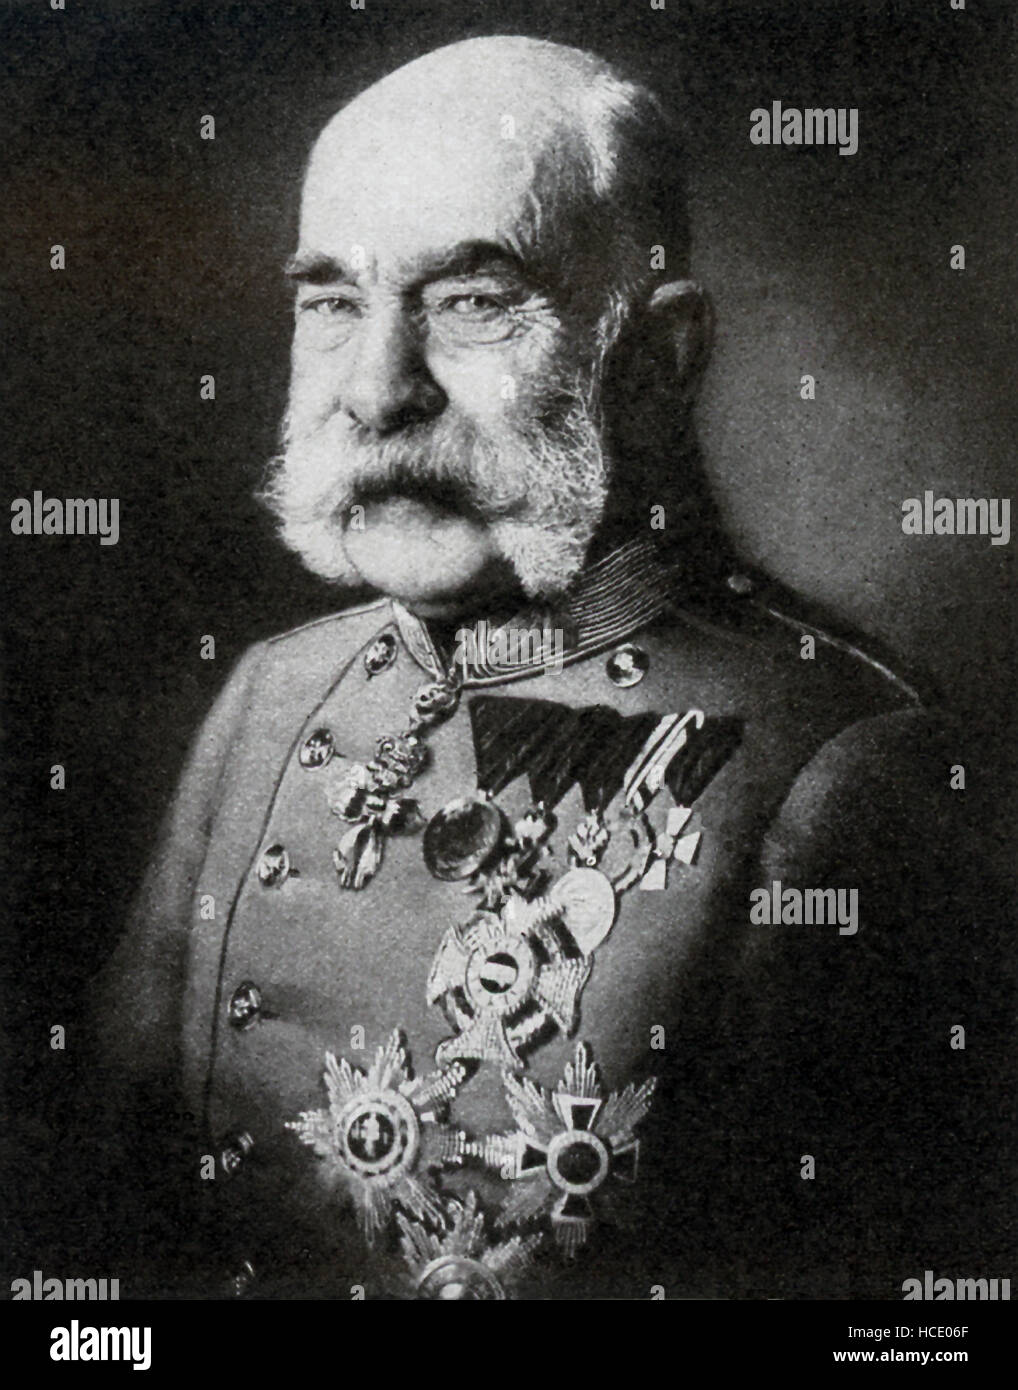 Questa foto del monarca austro-ungarico Franz Josef risale al 1917. Franz Josef mi fu l'imperatore d'Austria da 1848-1916. Egli è stato anche re di Ungheria da 1867-1916. Suo fratello era Massimiliano del Messico. Foto Stock